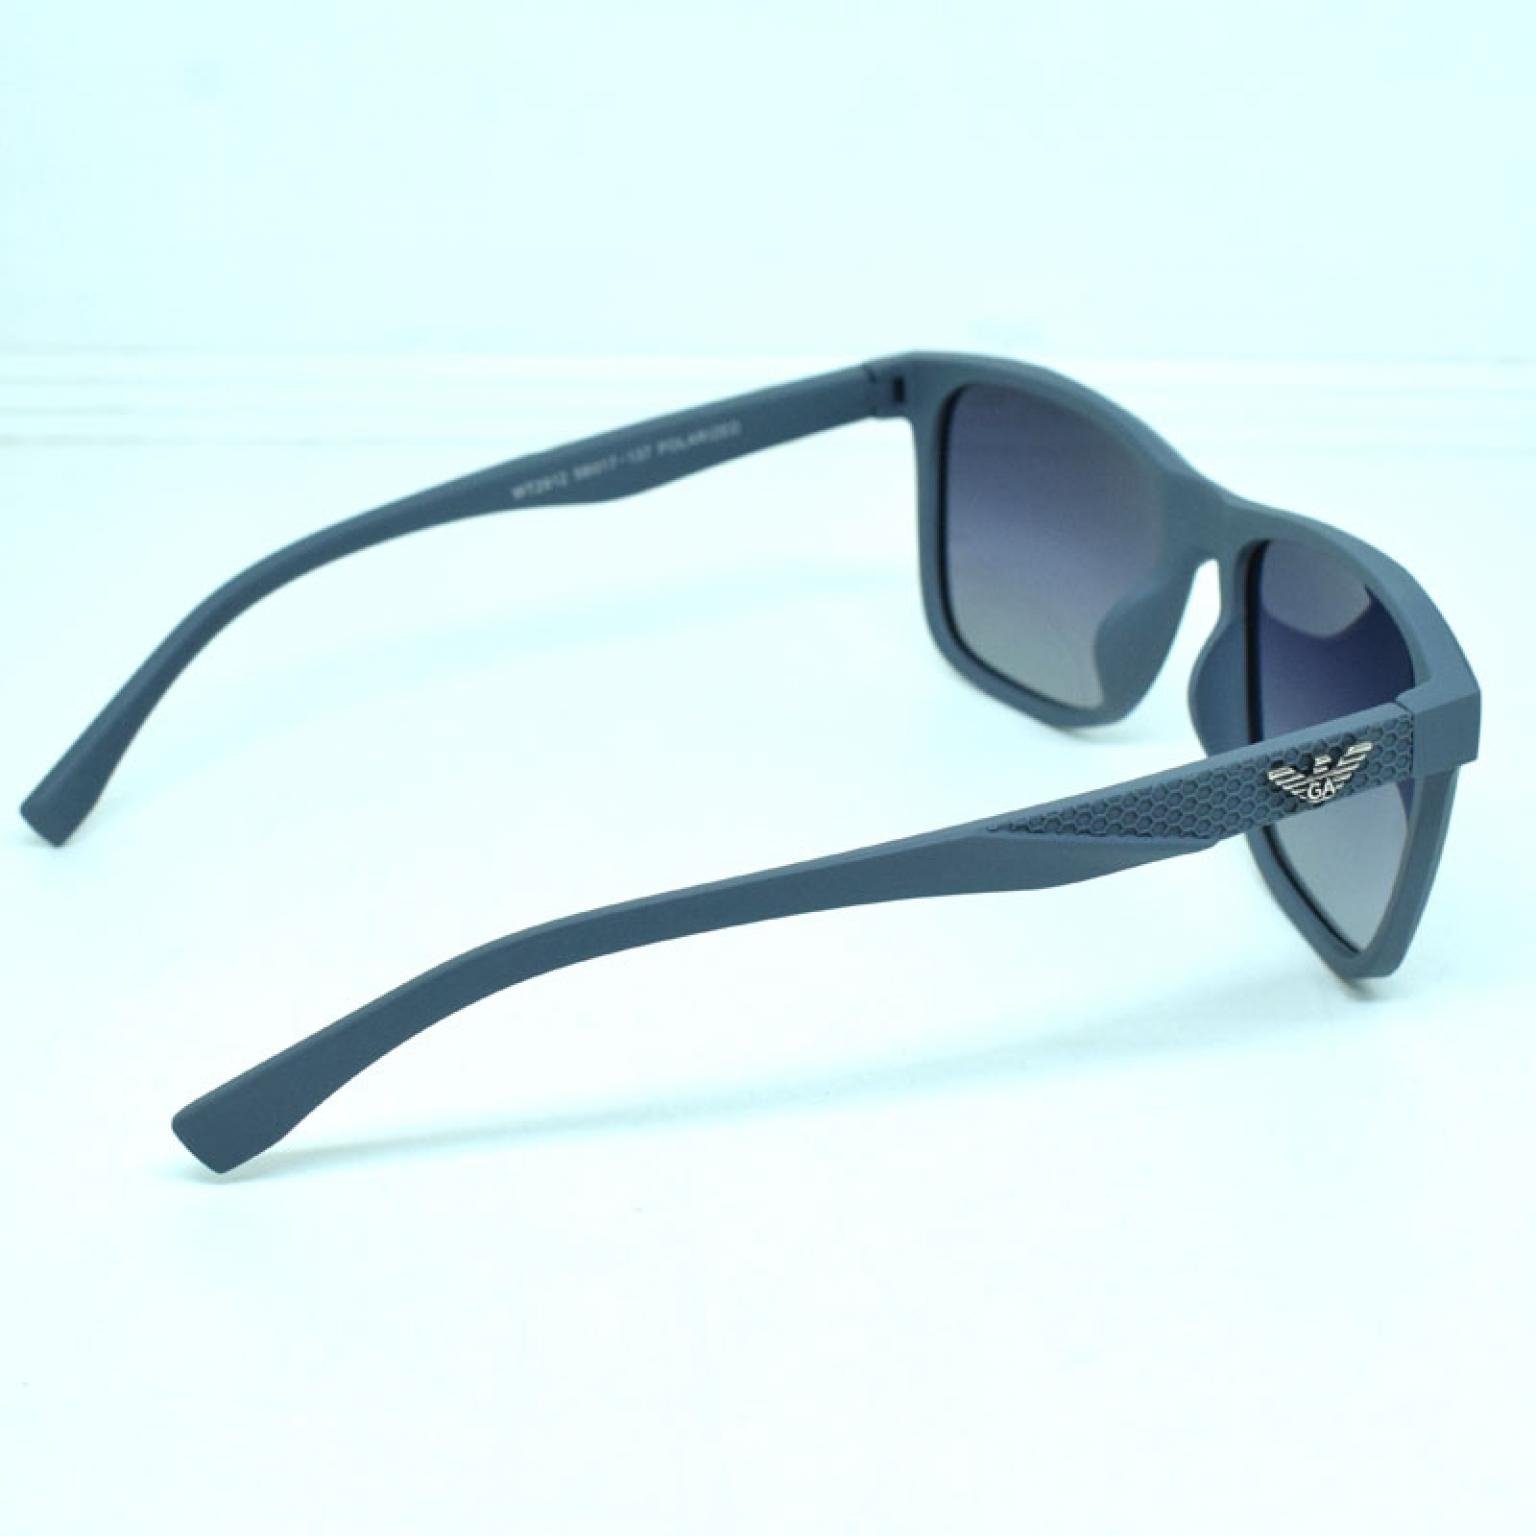 Men's New Wayfarer Polarized Sunglasses For Driving Swimming